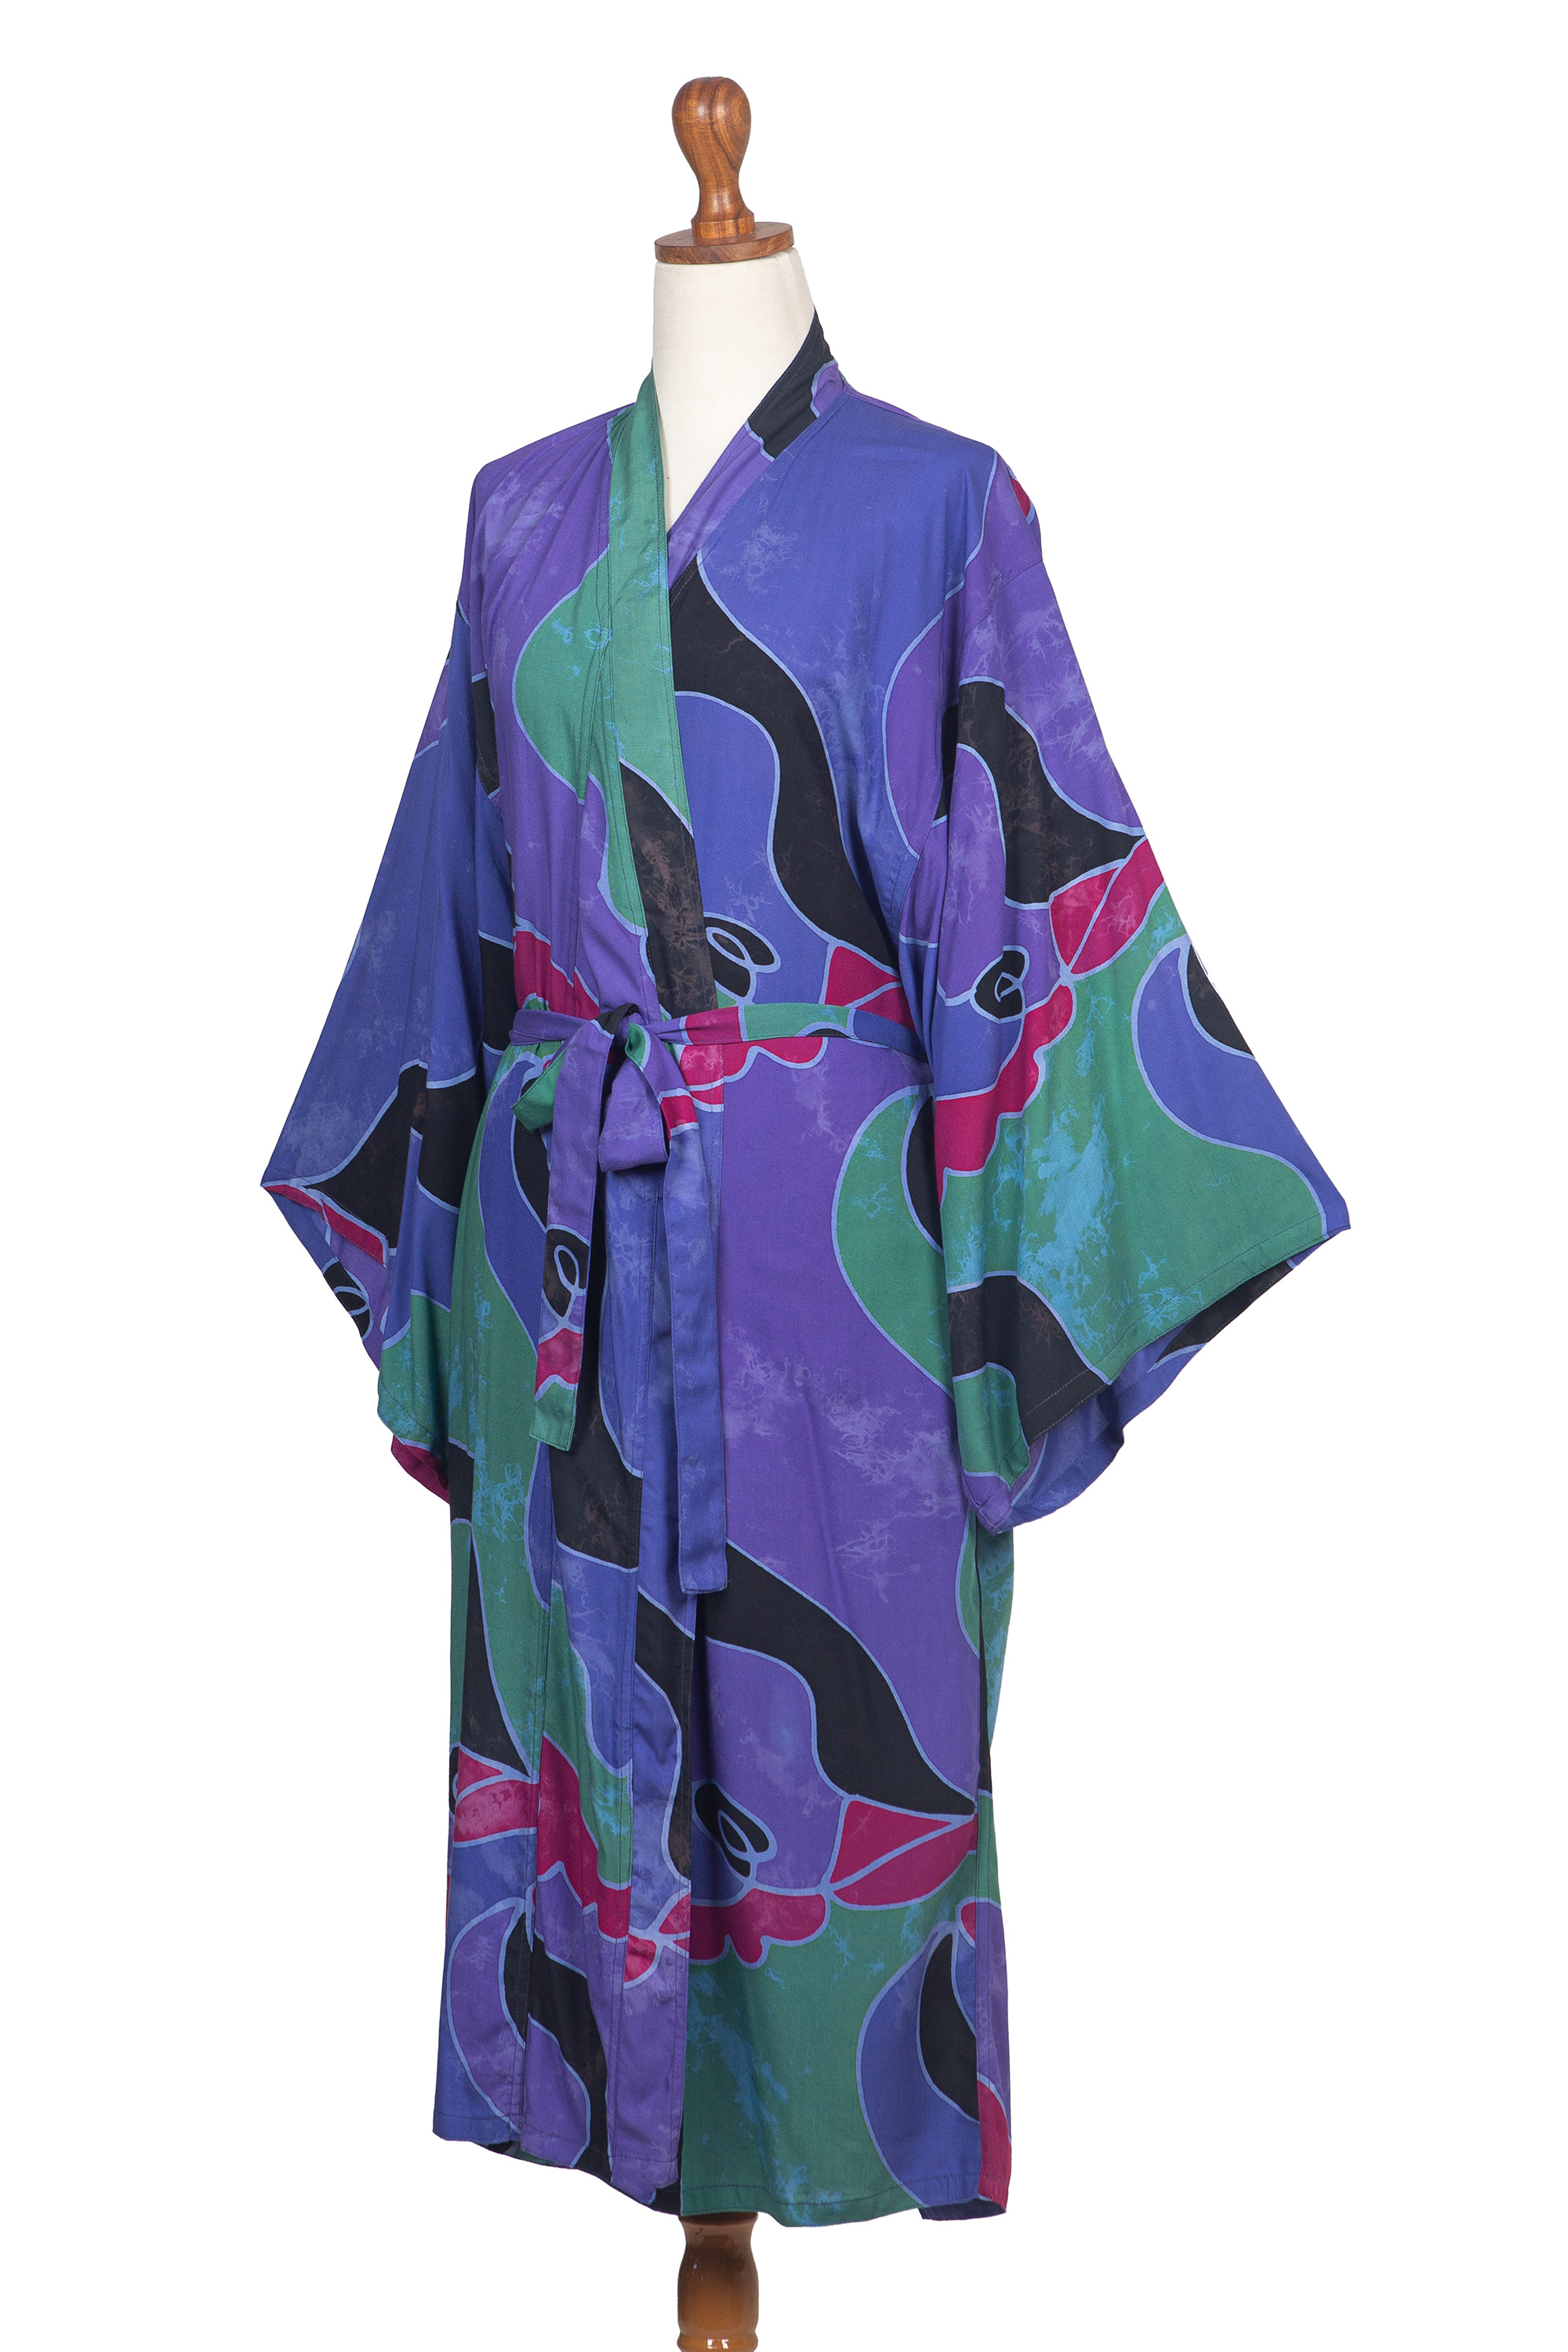 Women's Batik Patterned Robe - Turquoise Ocean | NOVICA